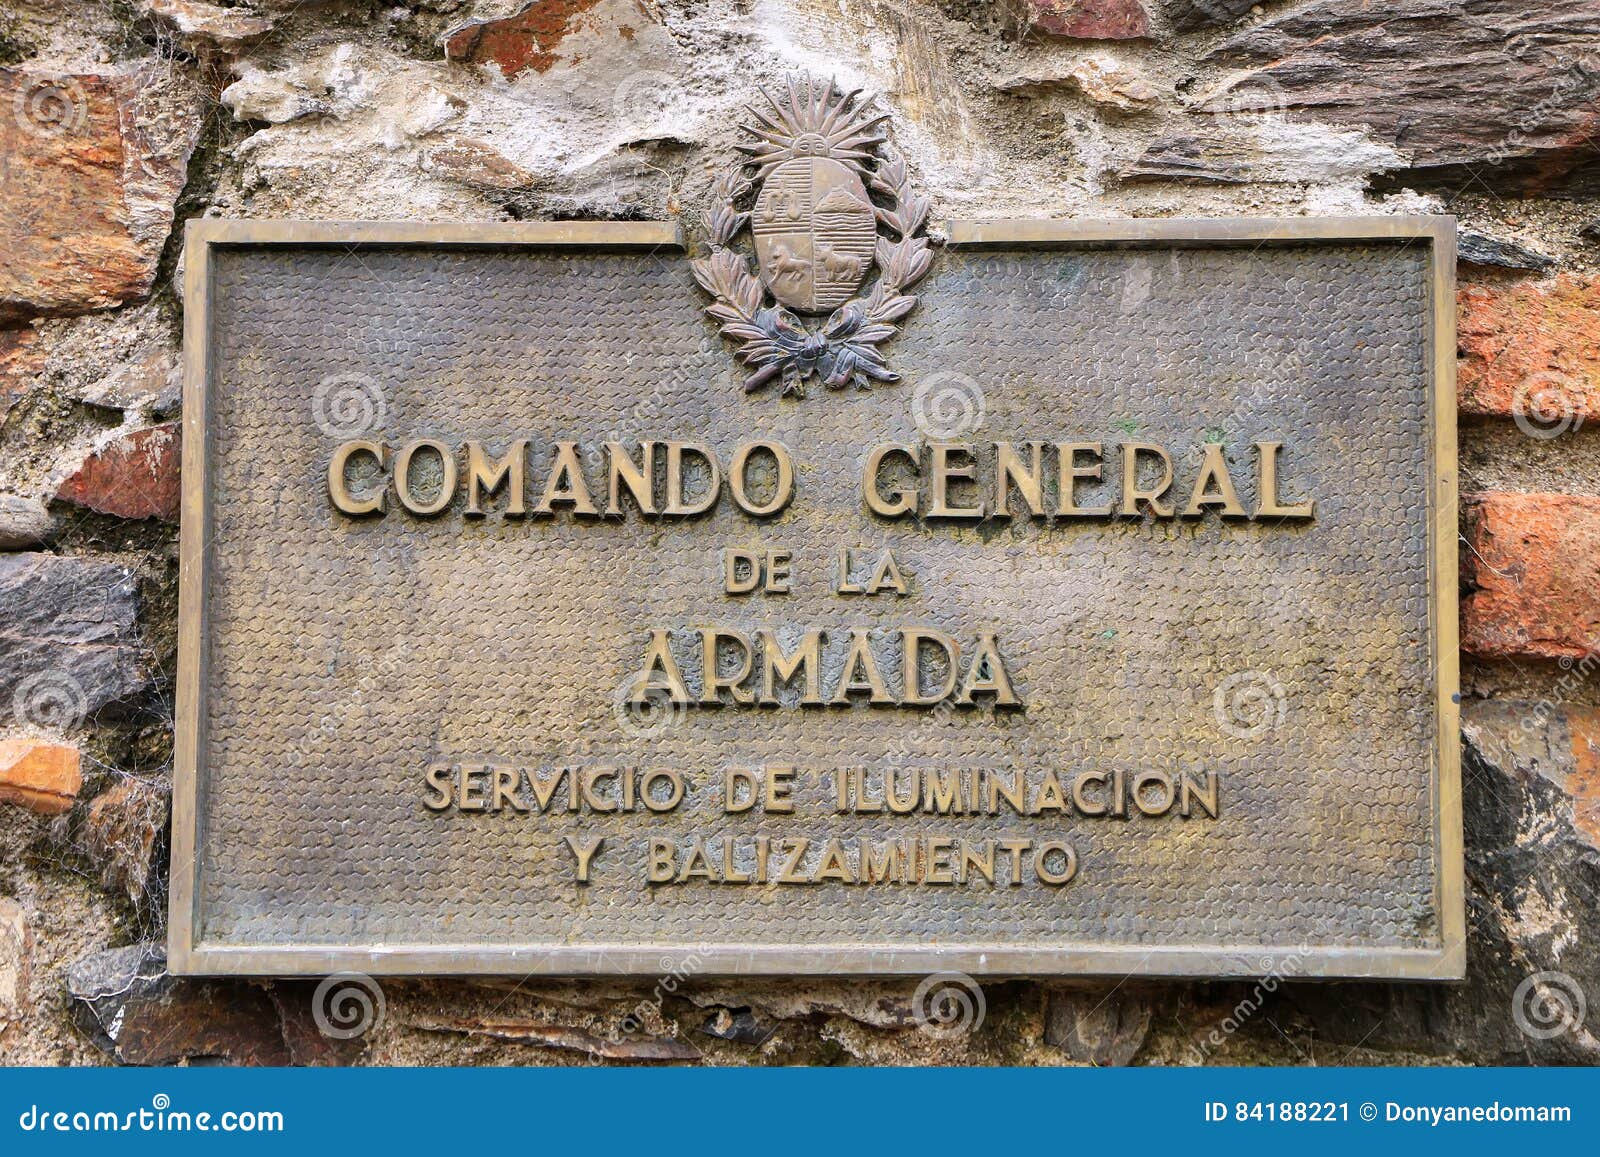 comando general de la armada sign in colonia del sacramento, uruguay